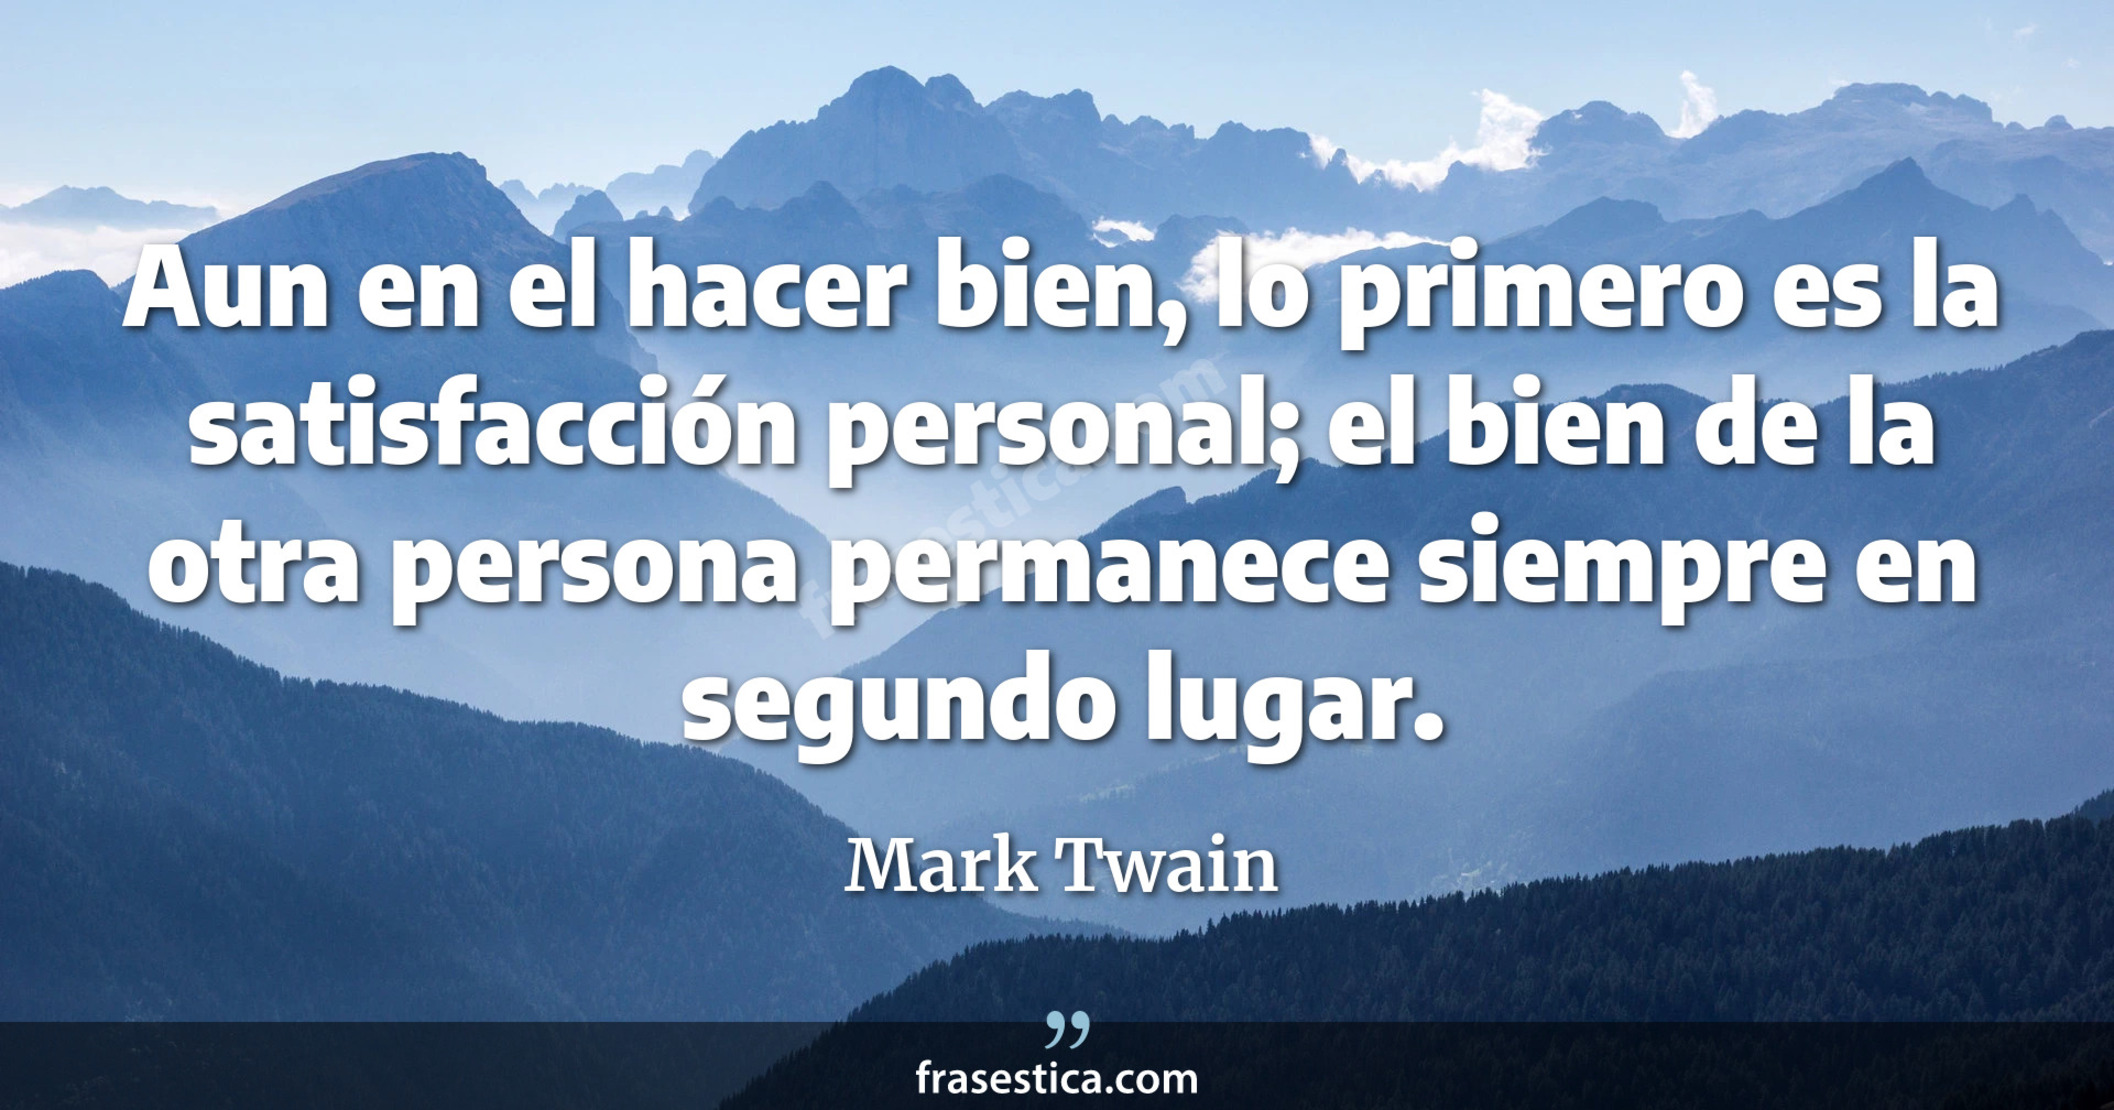 Aun en el hacer bien, lo primero es la satisfacción personal; el bien de la otra persona permanece siempre en segundo lugar. - Mark Twain